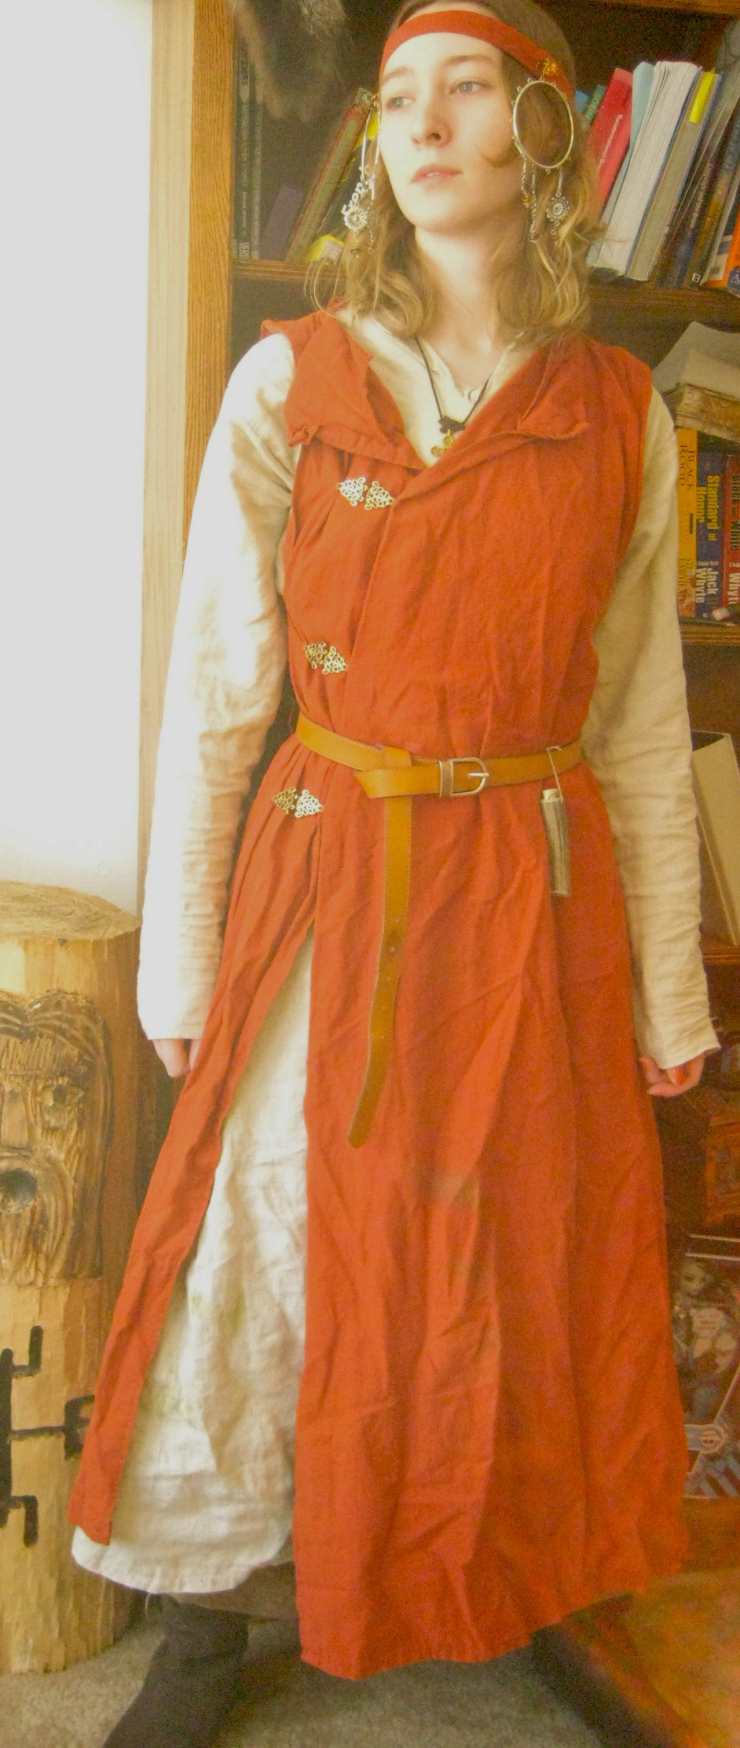 Аварский женский костюм. Реконструкция